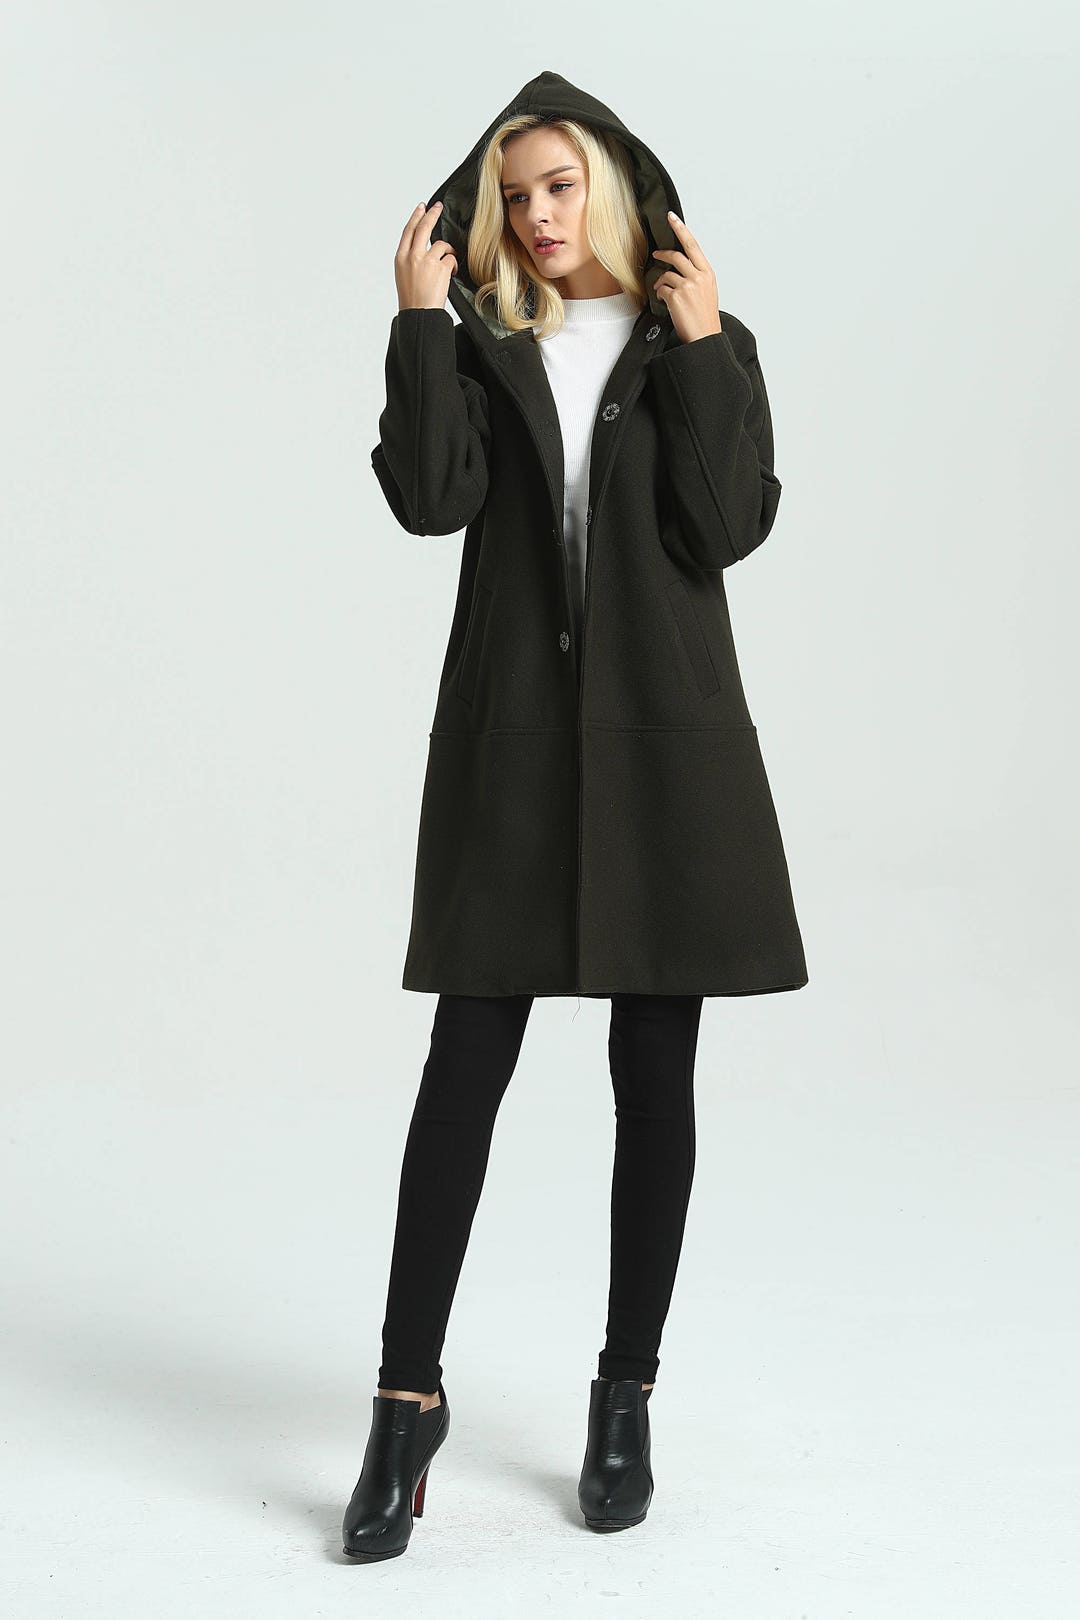 Women's Hoodies Leisure Coat Loose Wool Jacket Long Winter - Etsy